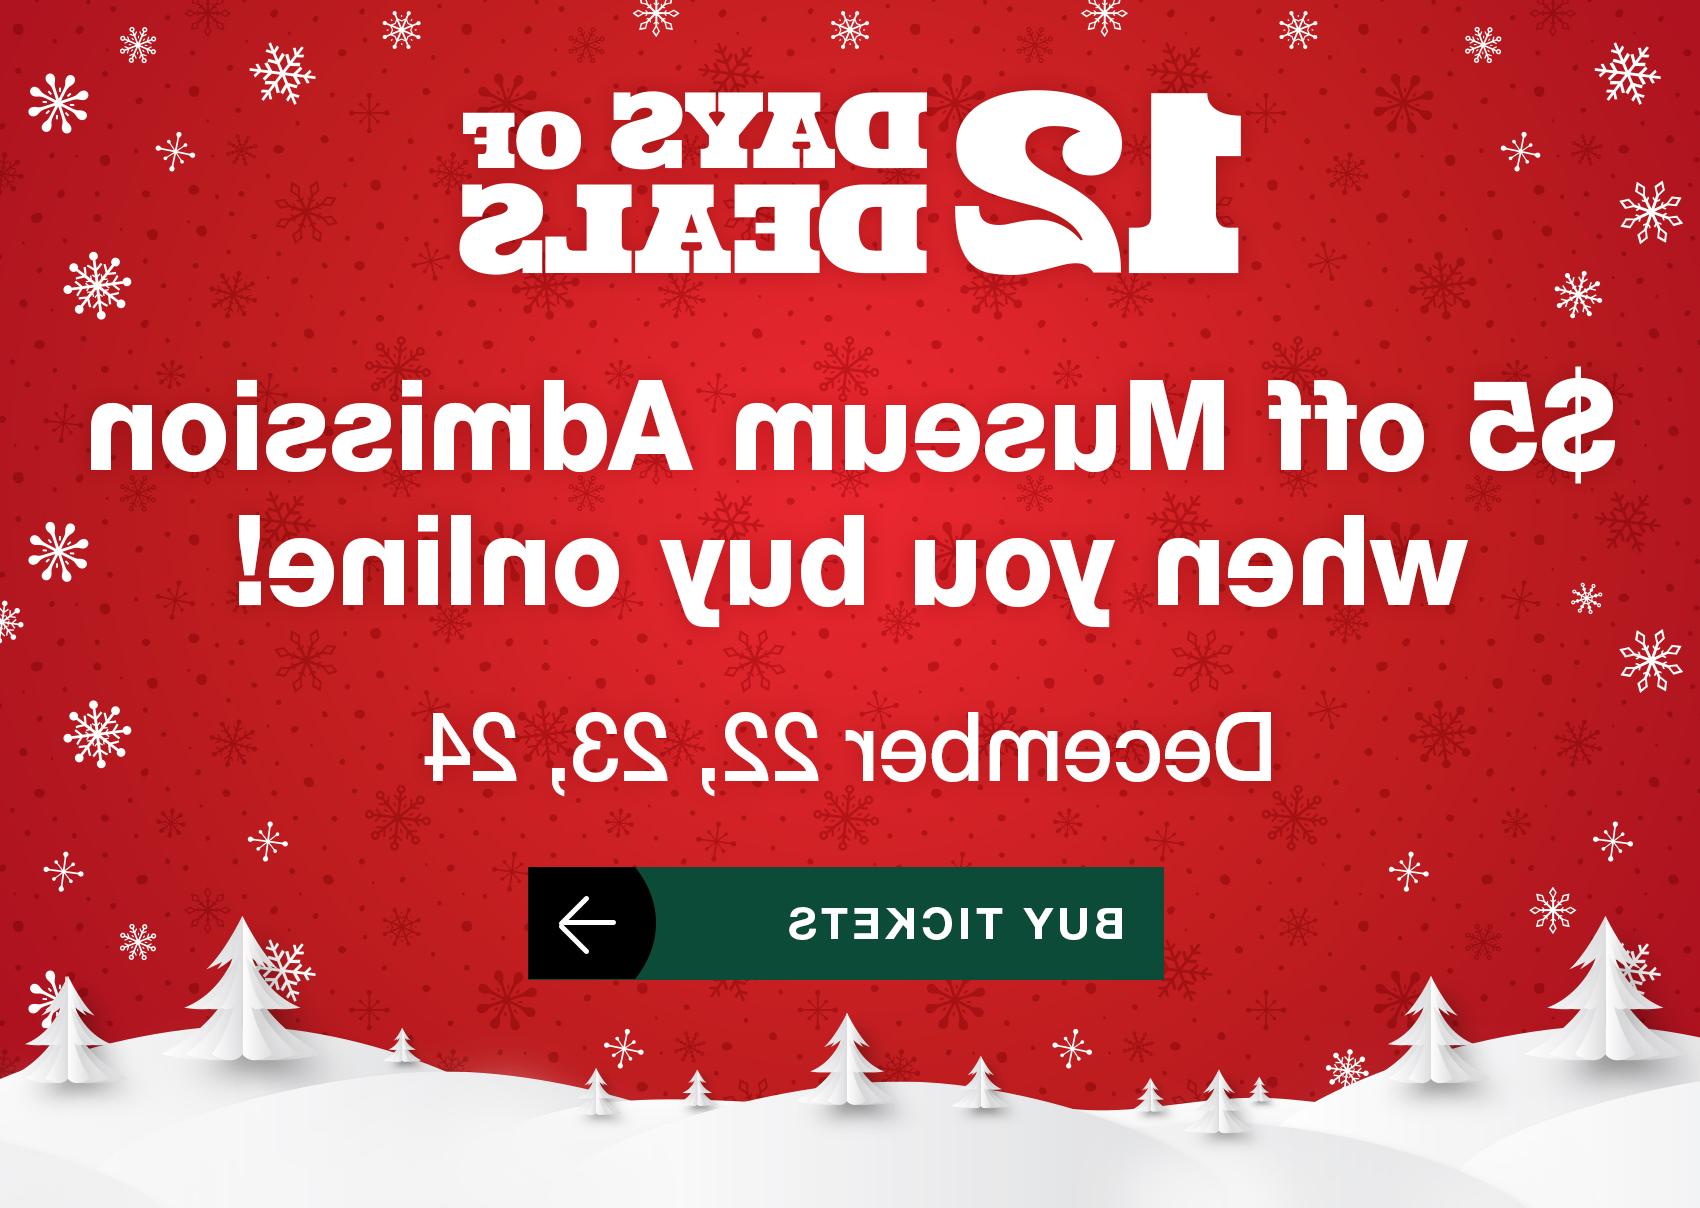 12天优惠! 网上购买博物馆门票可减免5美元! 12月22日，23日，24日. 买票.